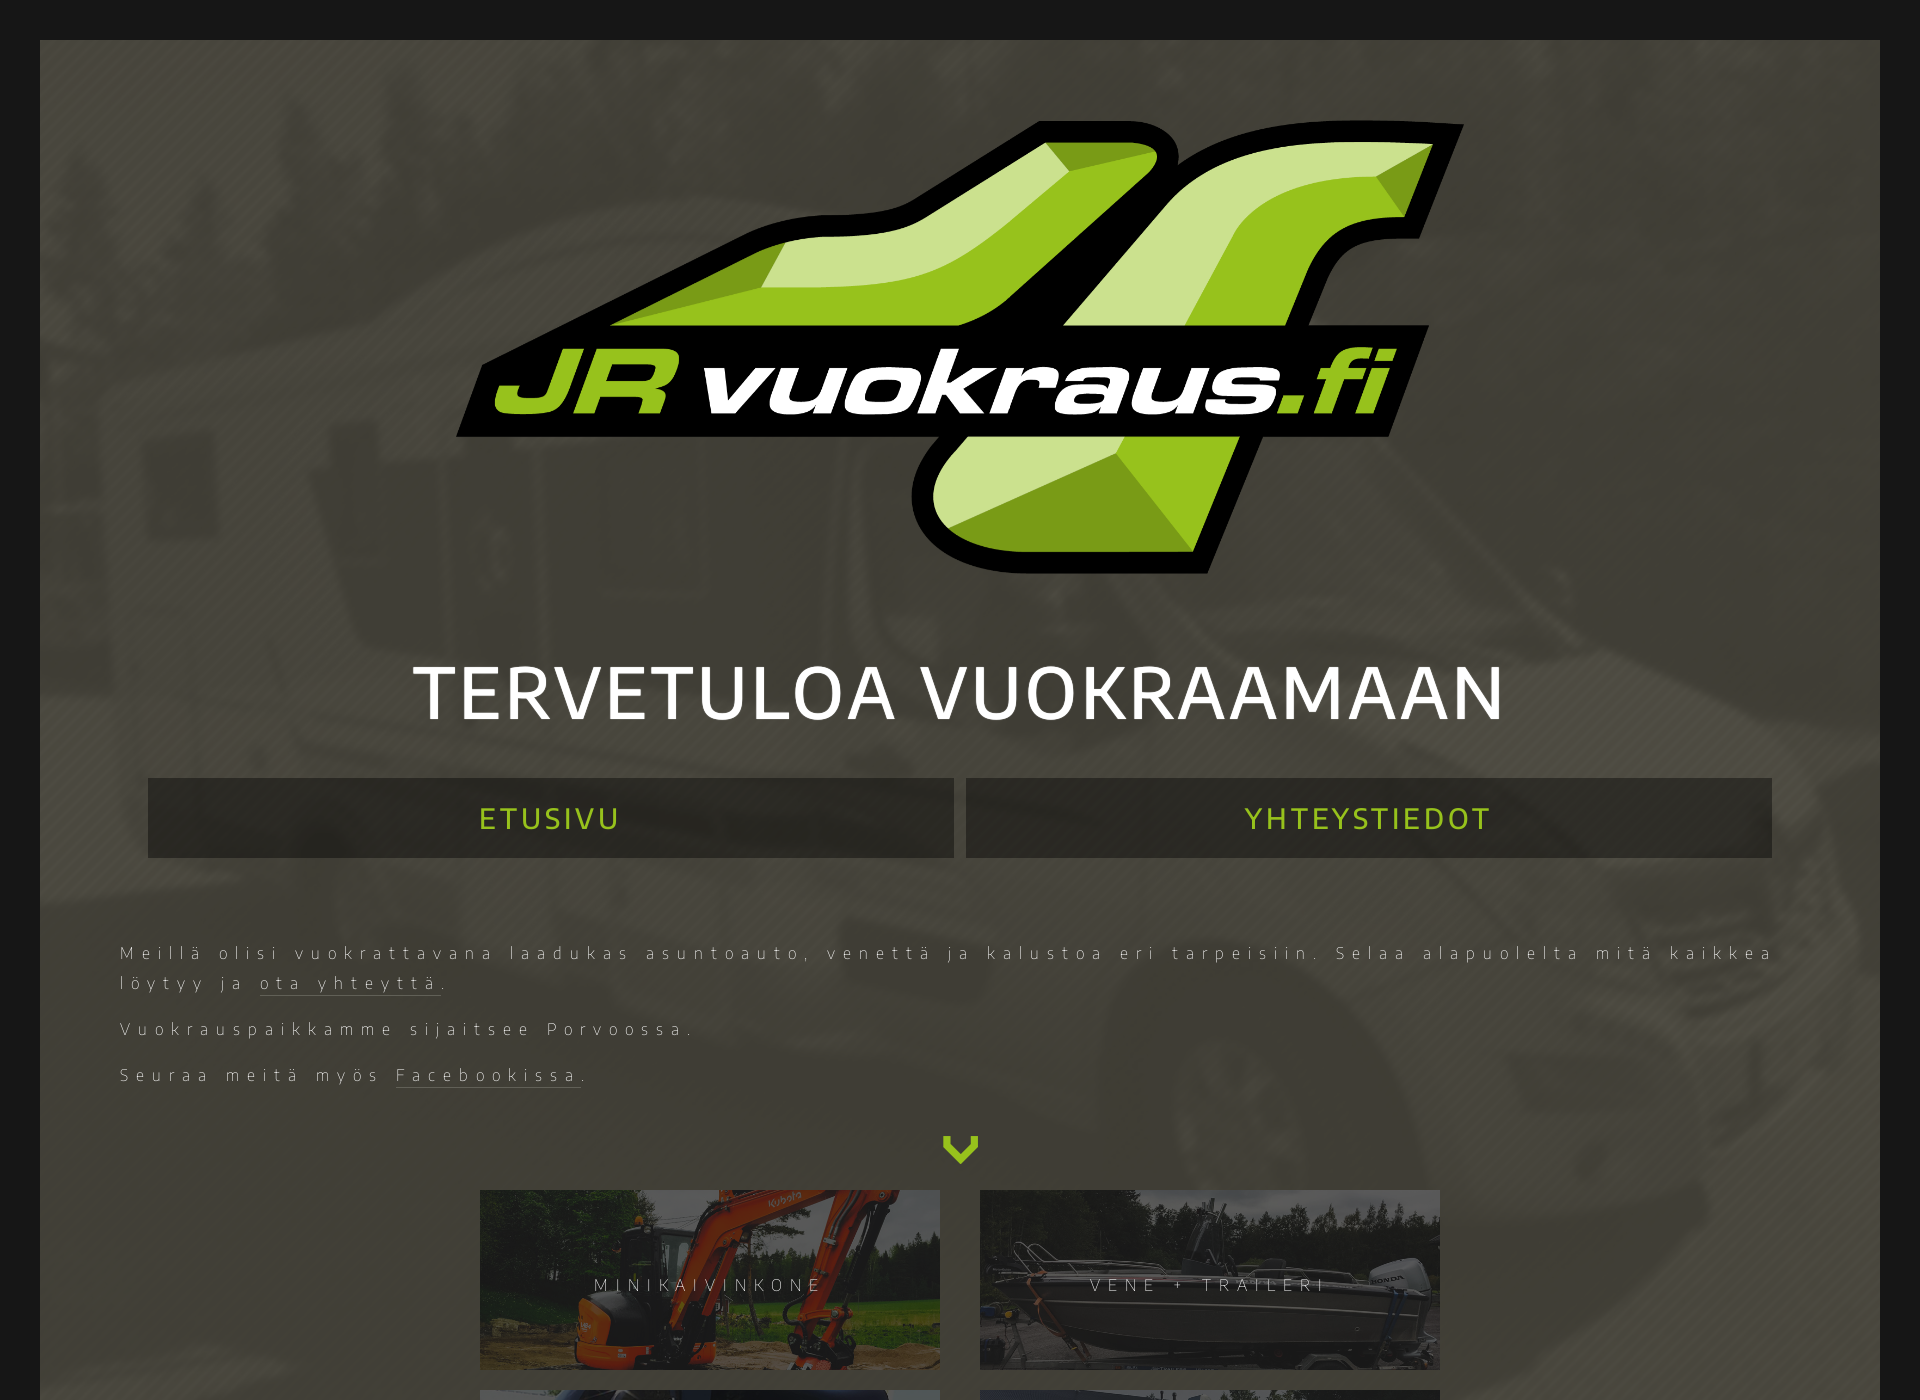 Näyttökuva jrvuokraus.fi